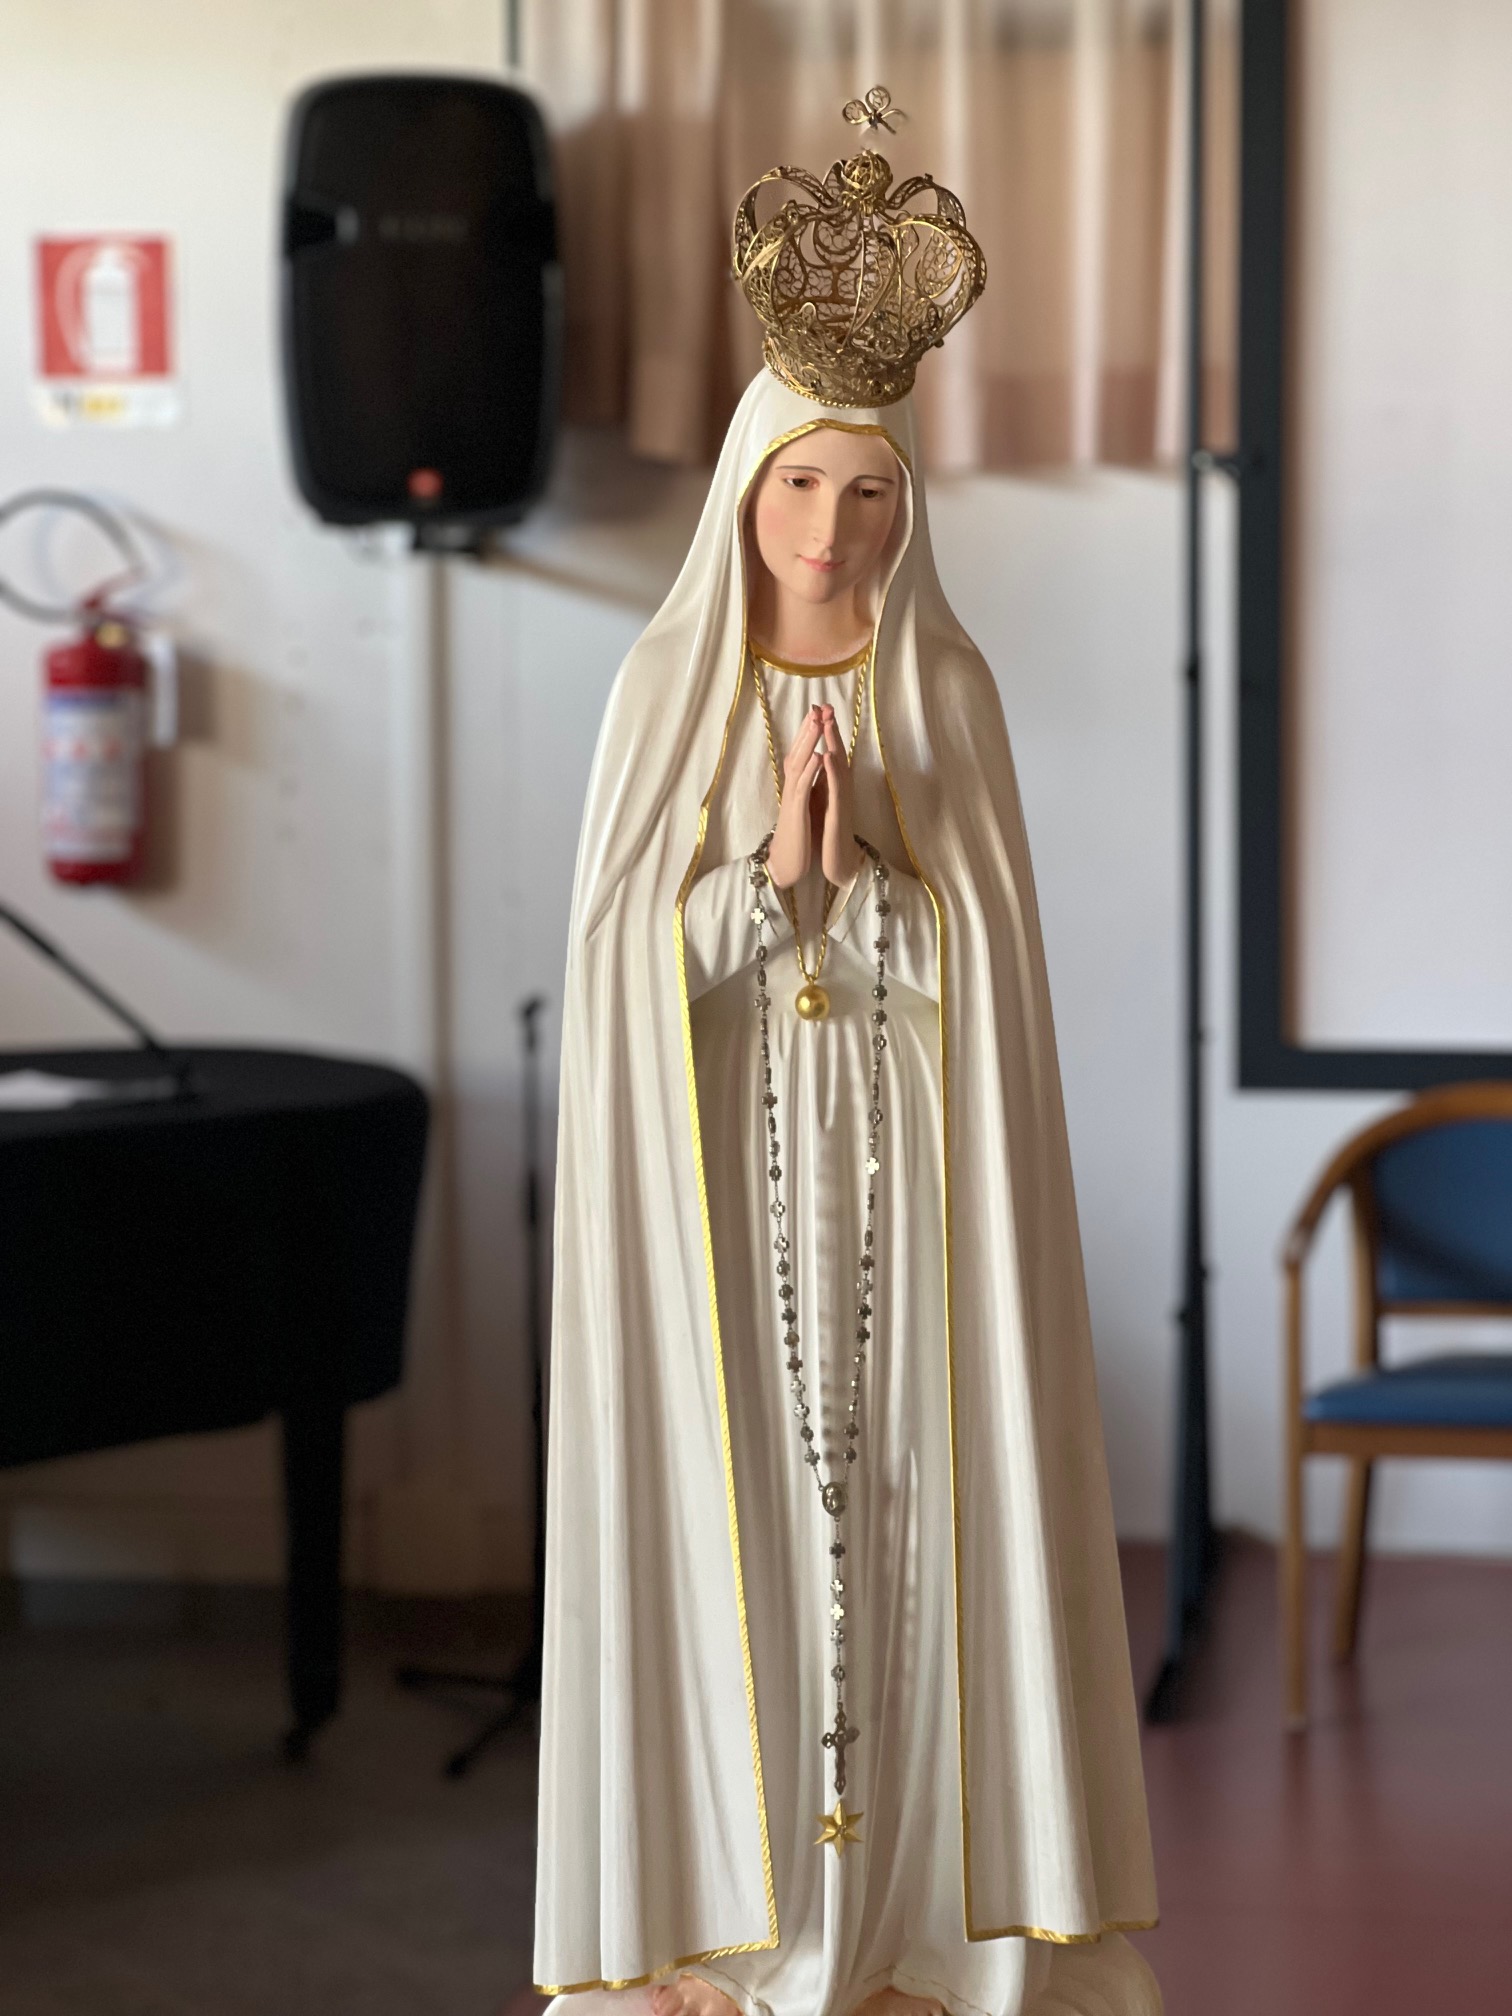 La statua della Madonna di Fatima